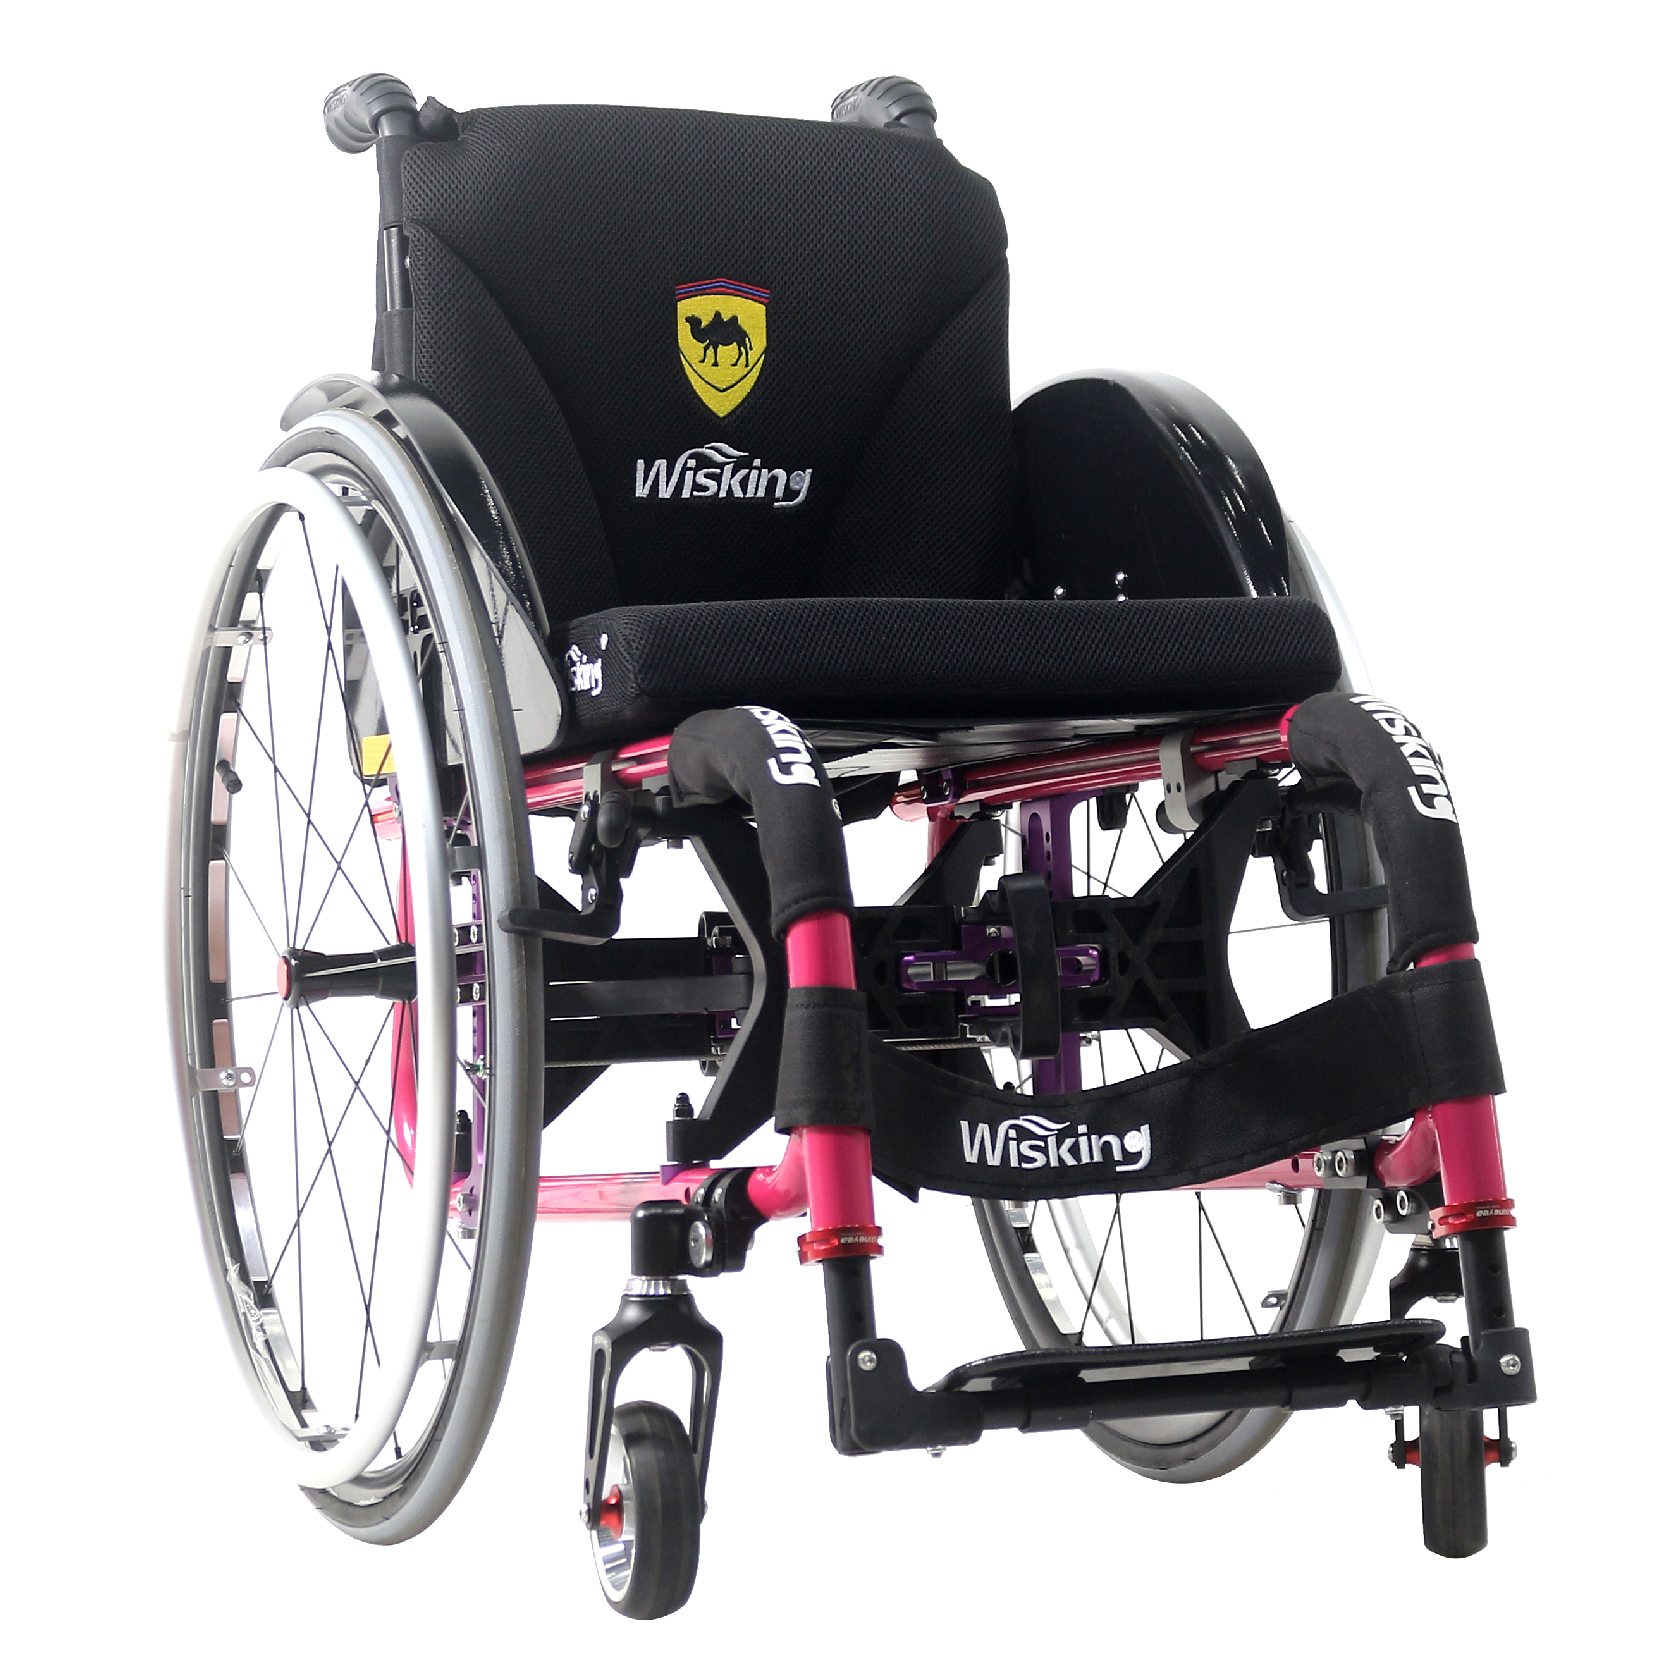 Leichter klappbarer Aktivrollstuhl aus Aluminiumlegierung für Behinderte